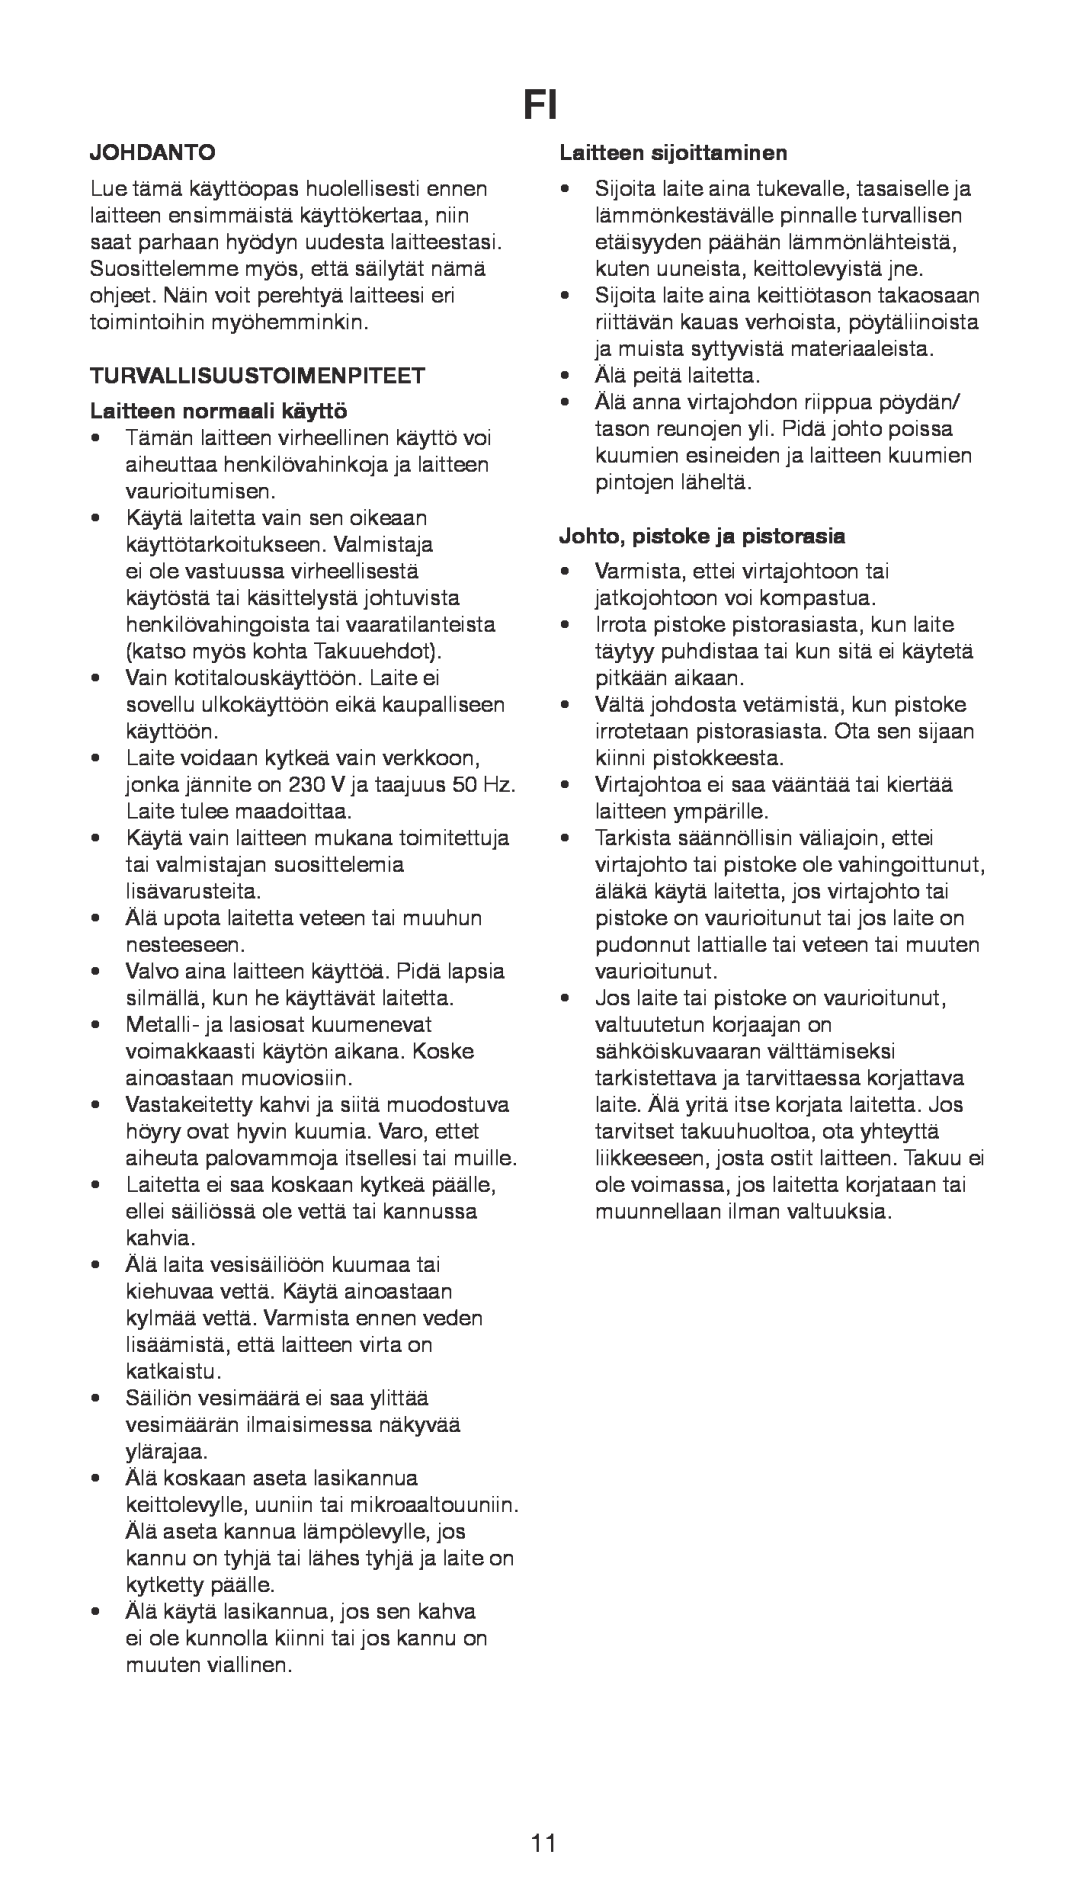 Melissa 645-104 manual Johdanto, TURVALLISUUSTOIMENPITEET Laitteen normaali käyttö, Laitteen sijoittaminen 